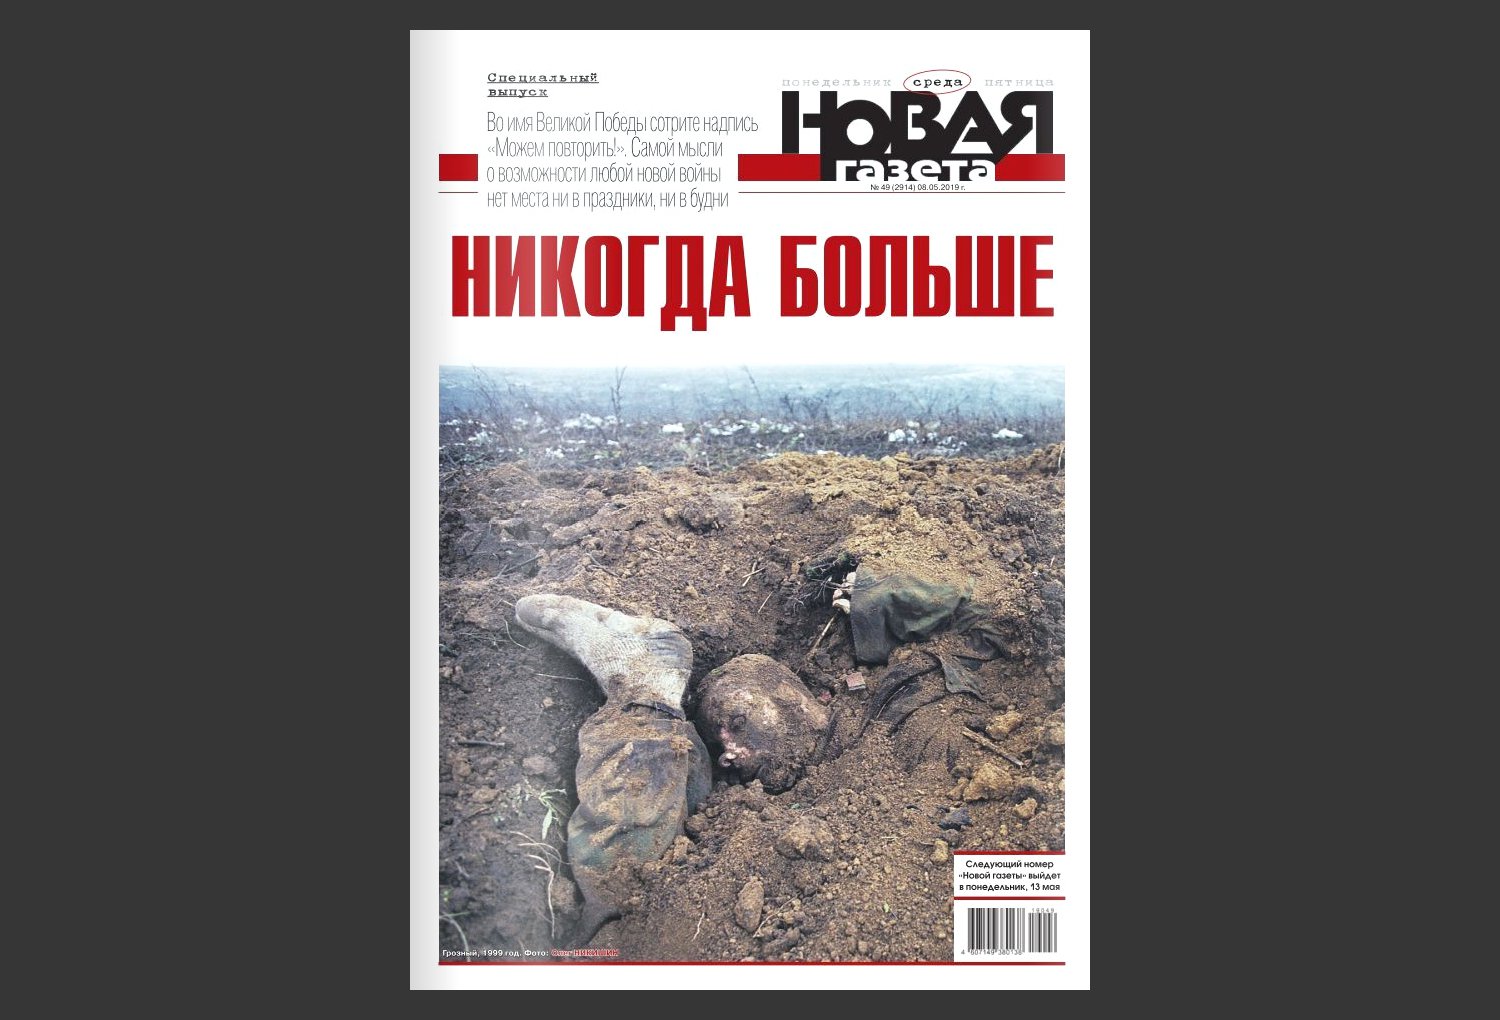 Обложка [спецвыпуска «Новой газеты»](https://novayagazeta.ru/issues/2828) к 9 мая 2019 года